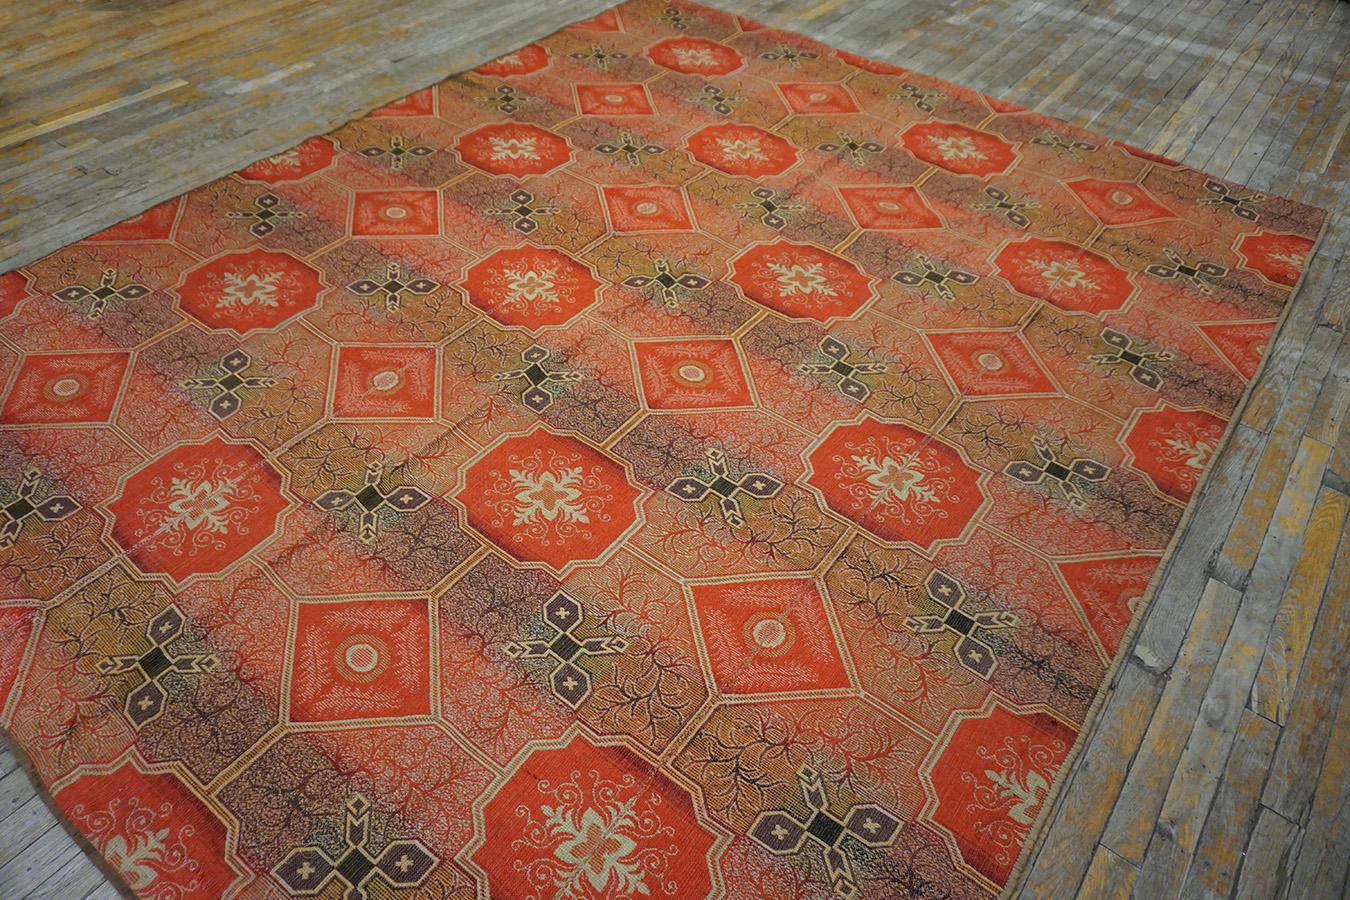 Wool 19th Century American Ingrain Carpet ( 7'7